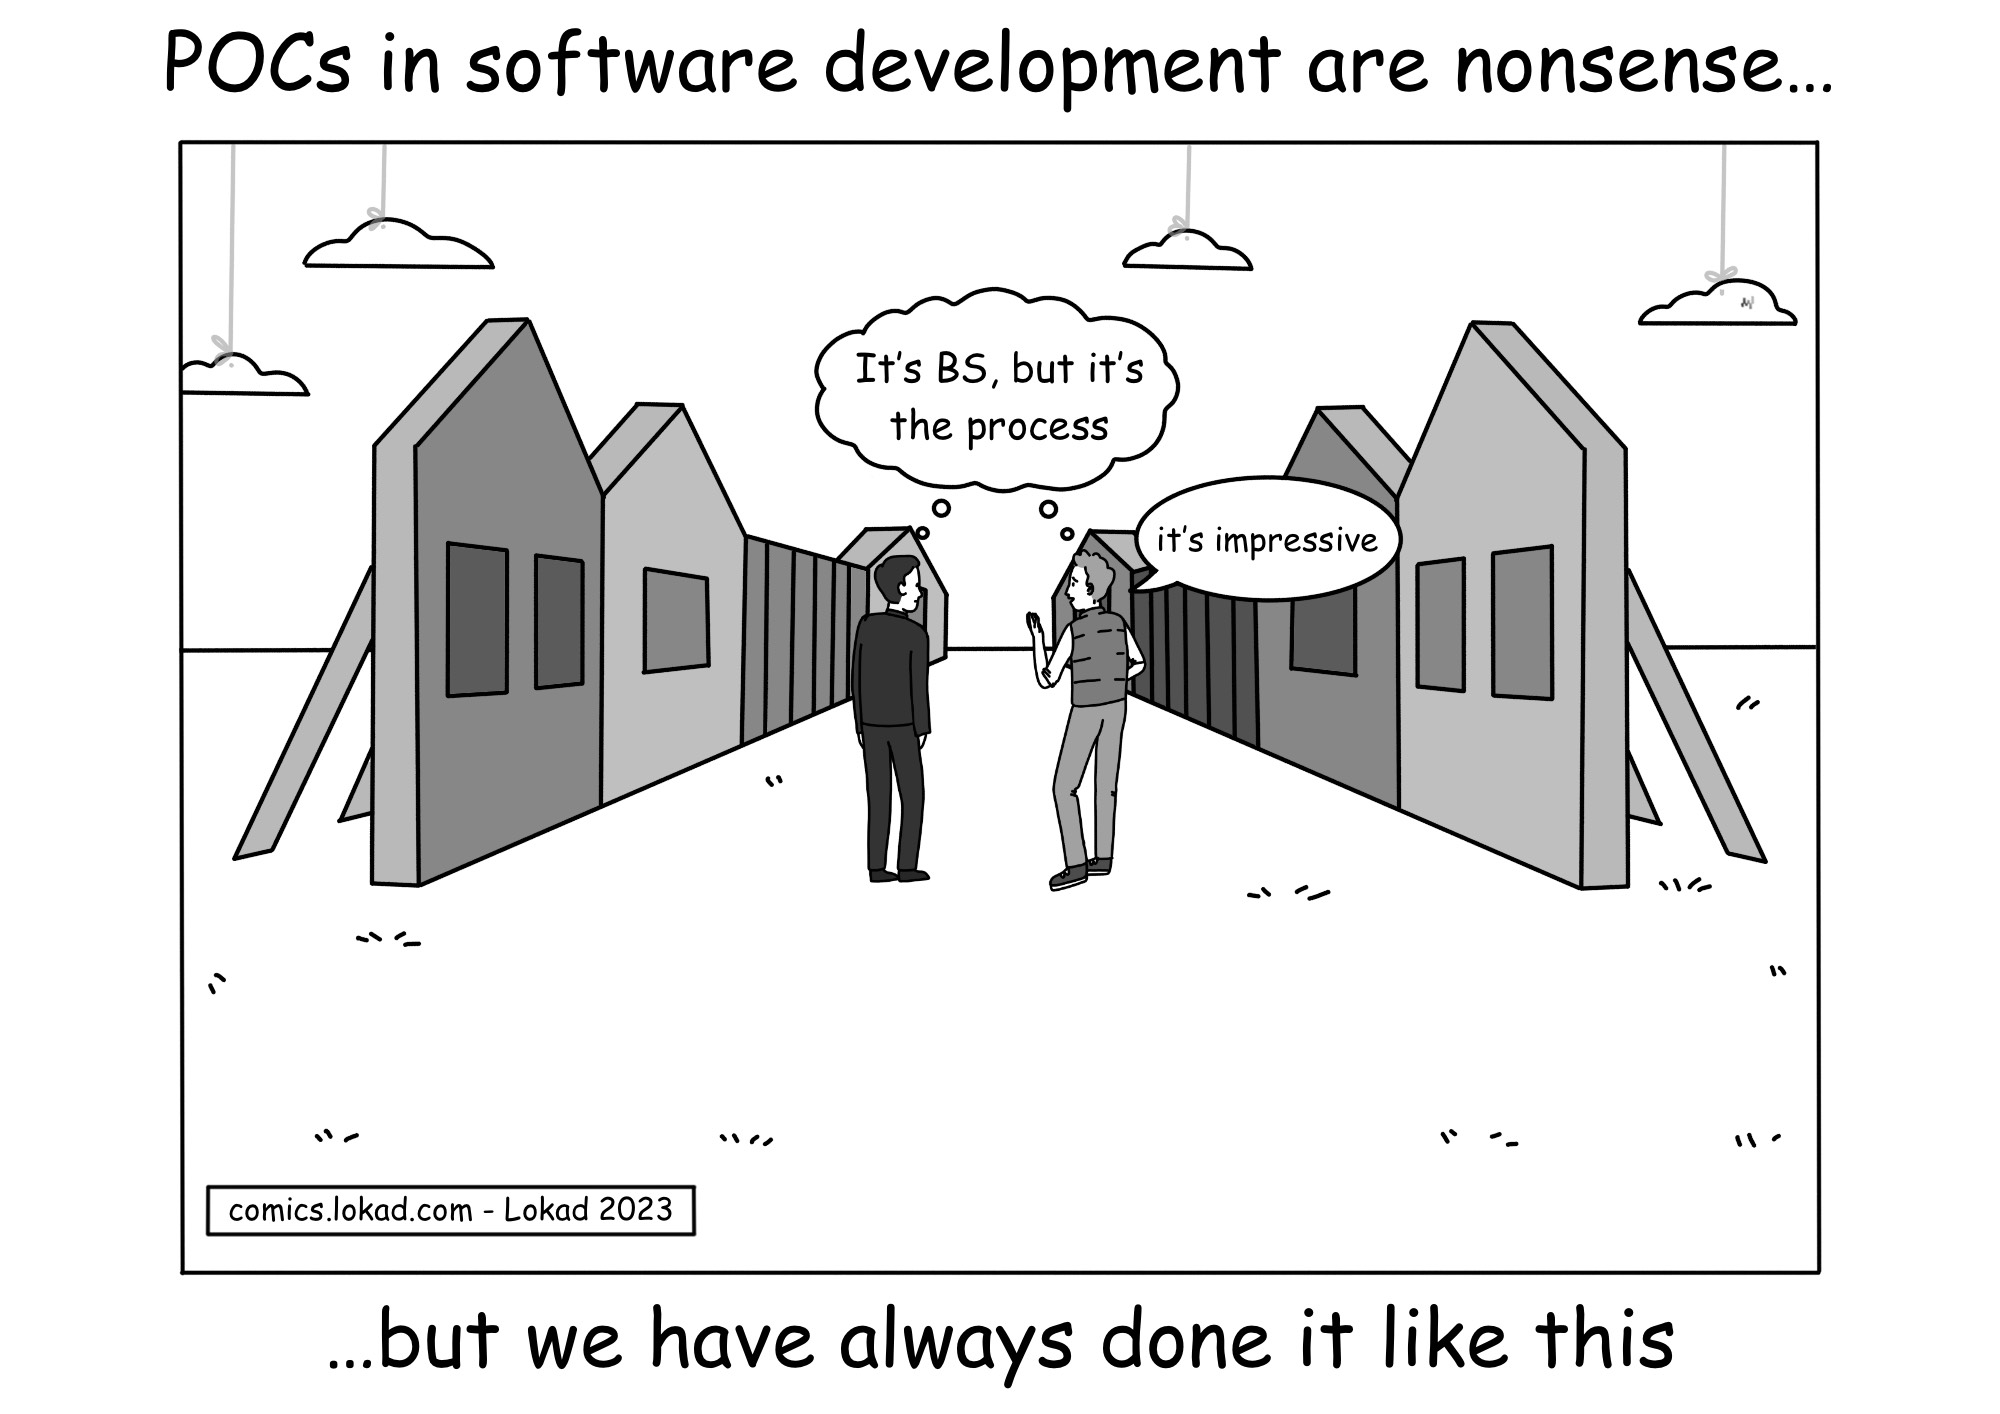 POCs in software development are nonsense